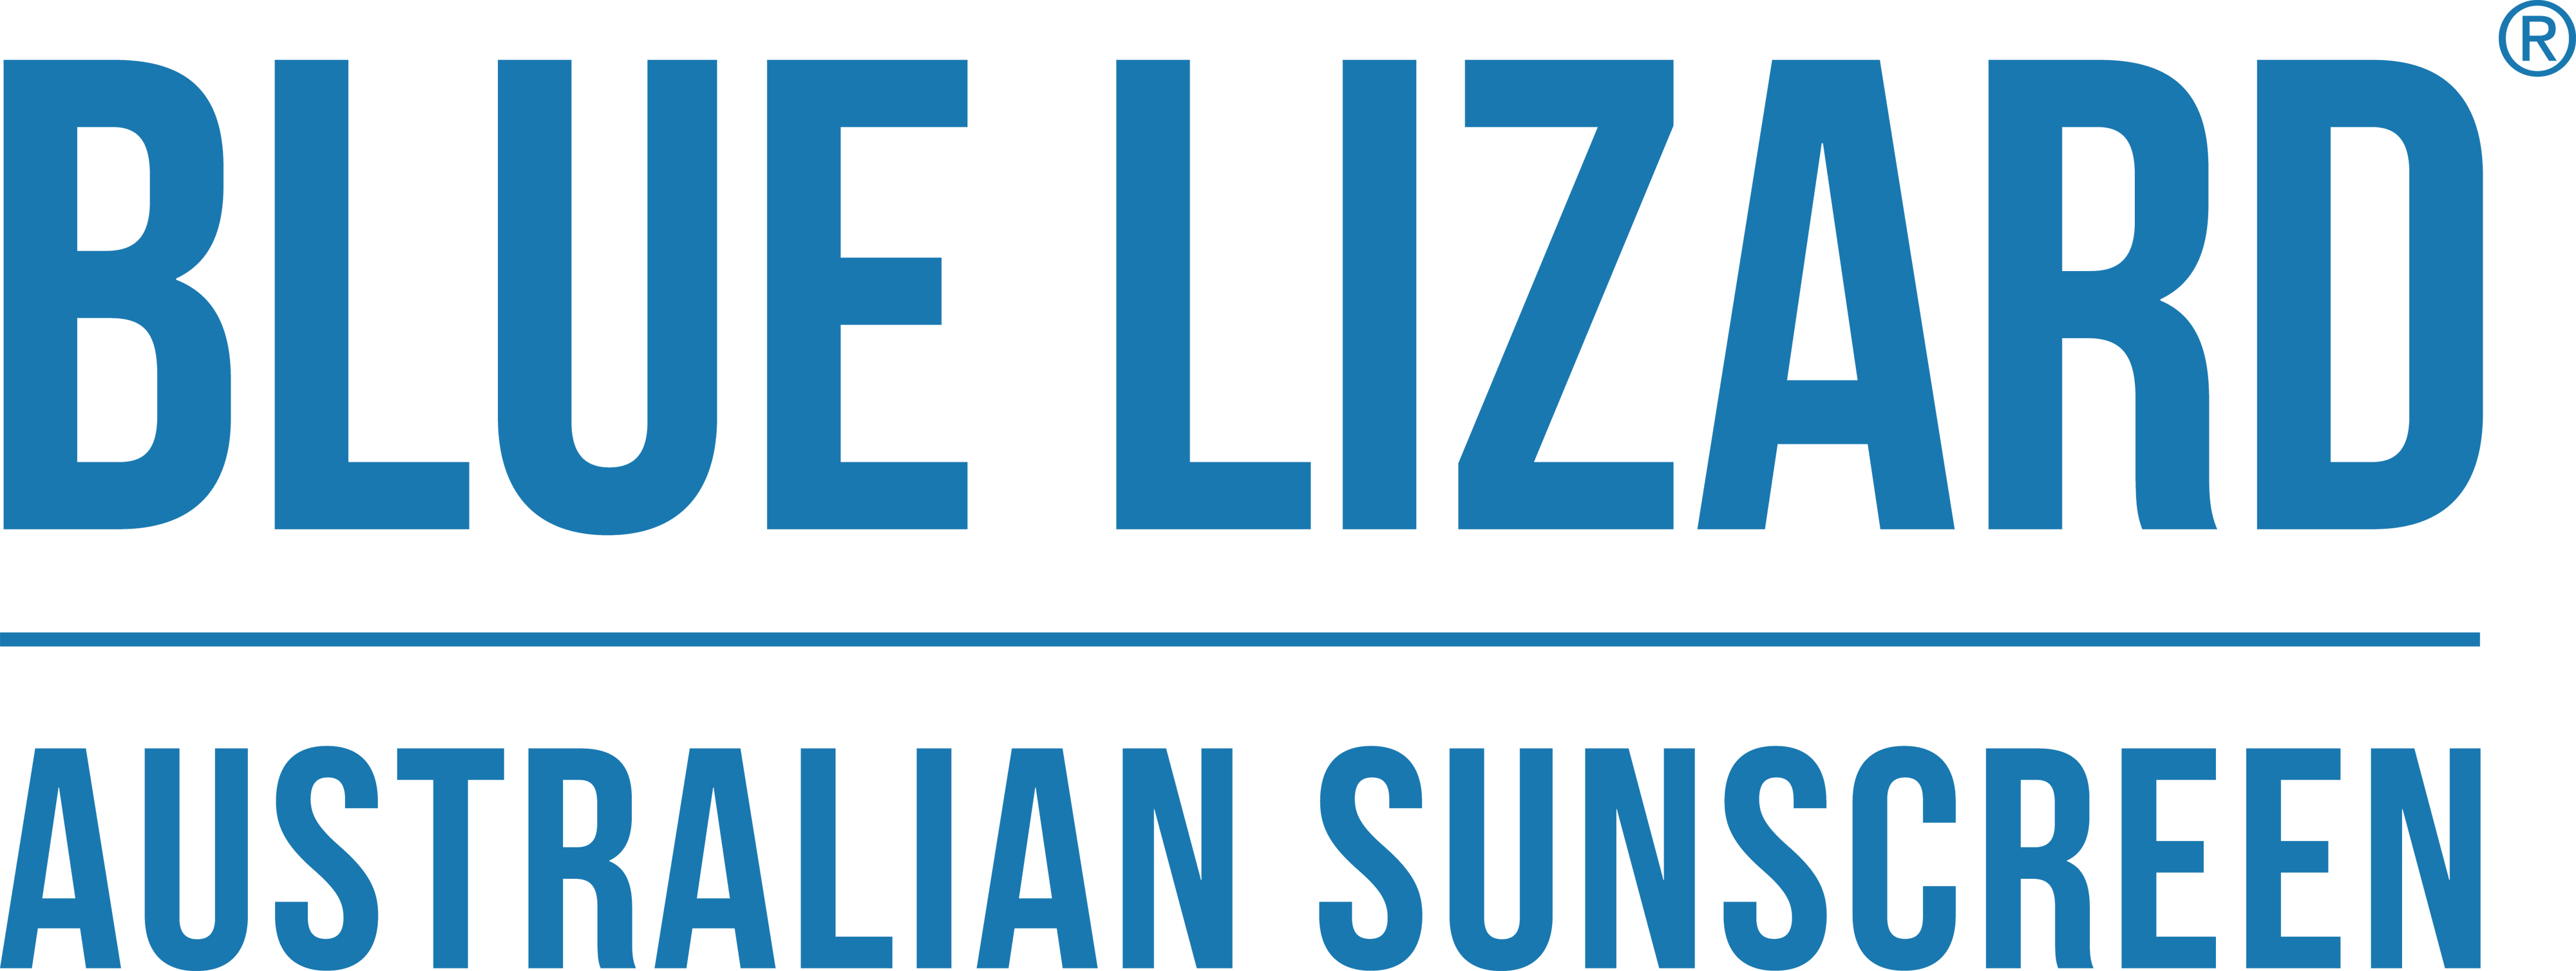 BLUE LIZARD AUSTRALIAN SUNSCREEN